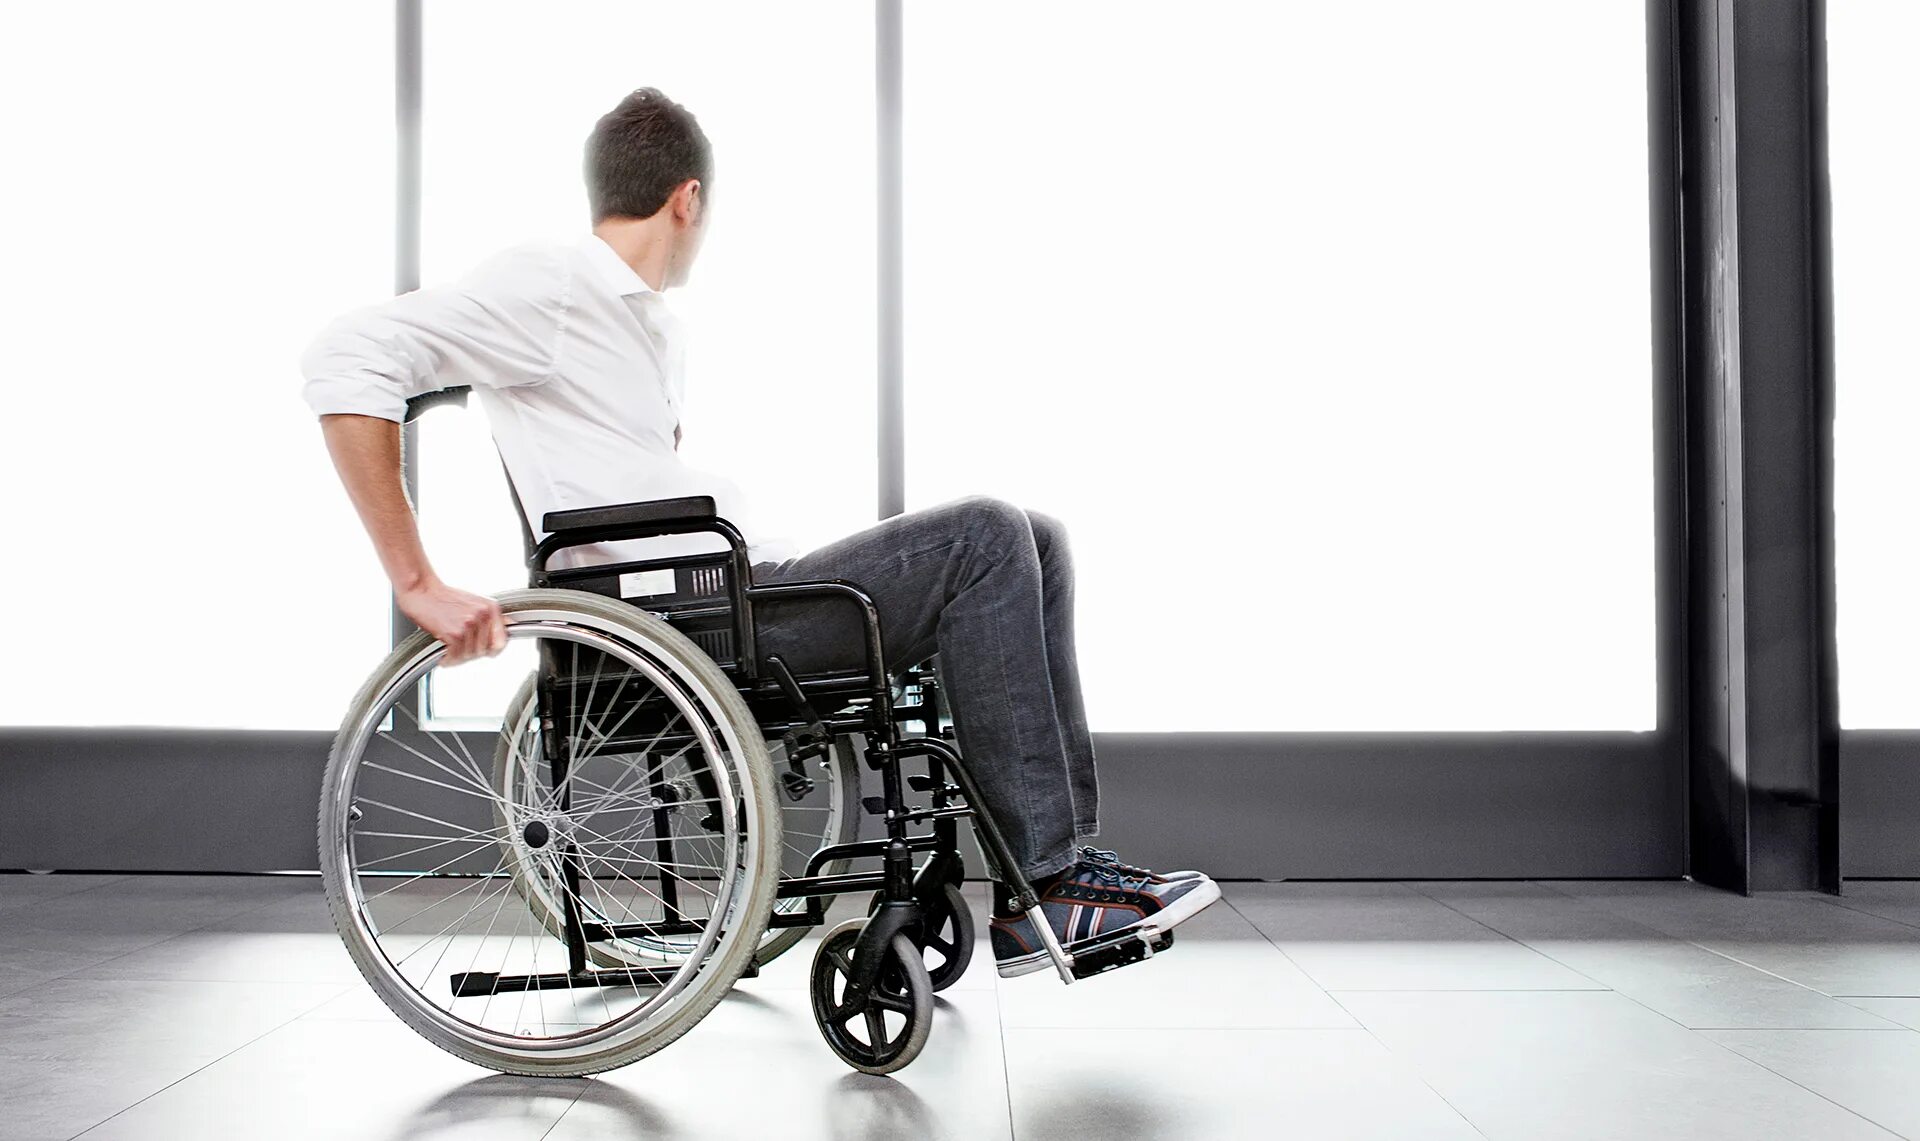 Инвалидная коляска Barry a8t. Инвалидная коляска «ИК-1м. Челик в инвальдной коляске. Человек в инвалидной коляске. Рождение с инвалидностью